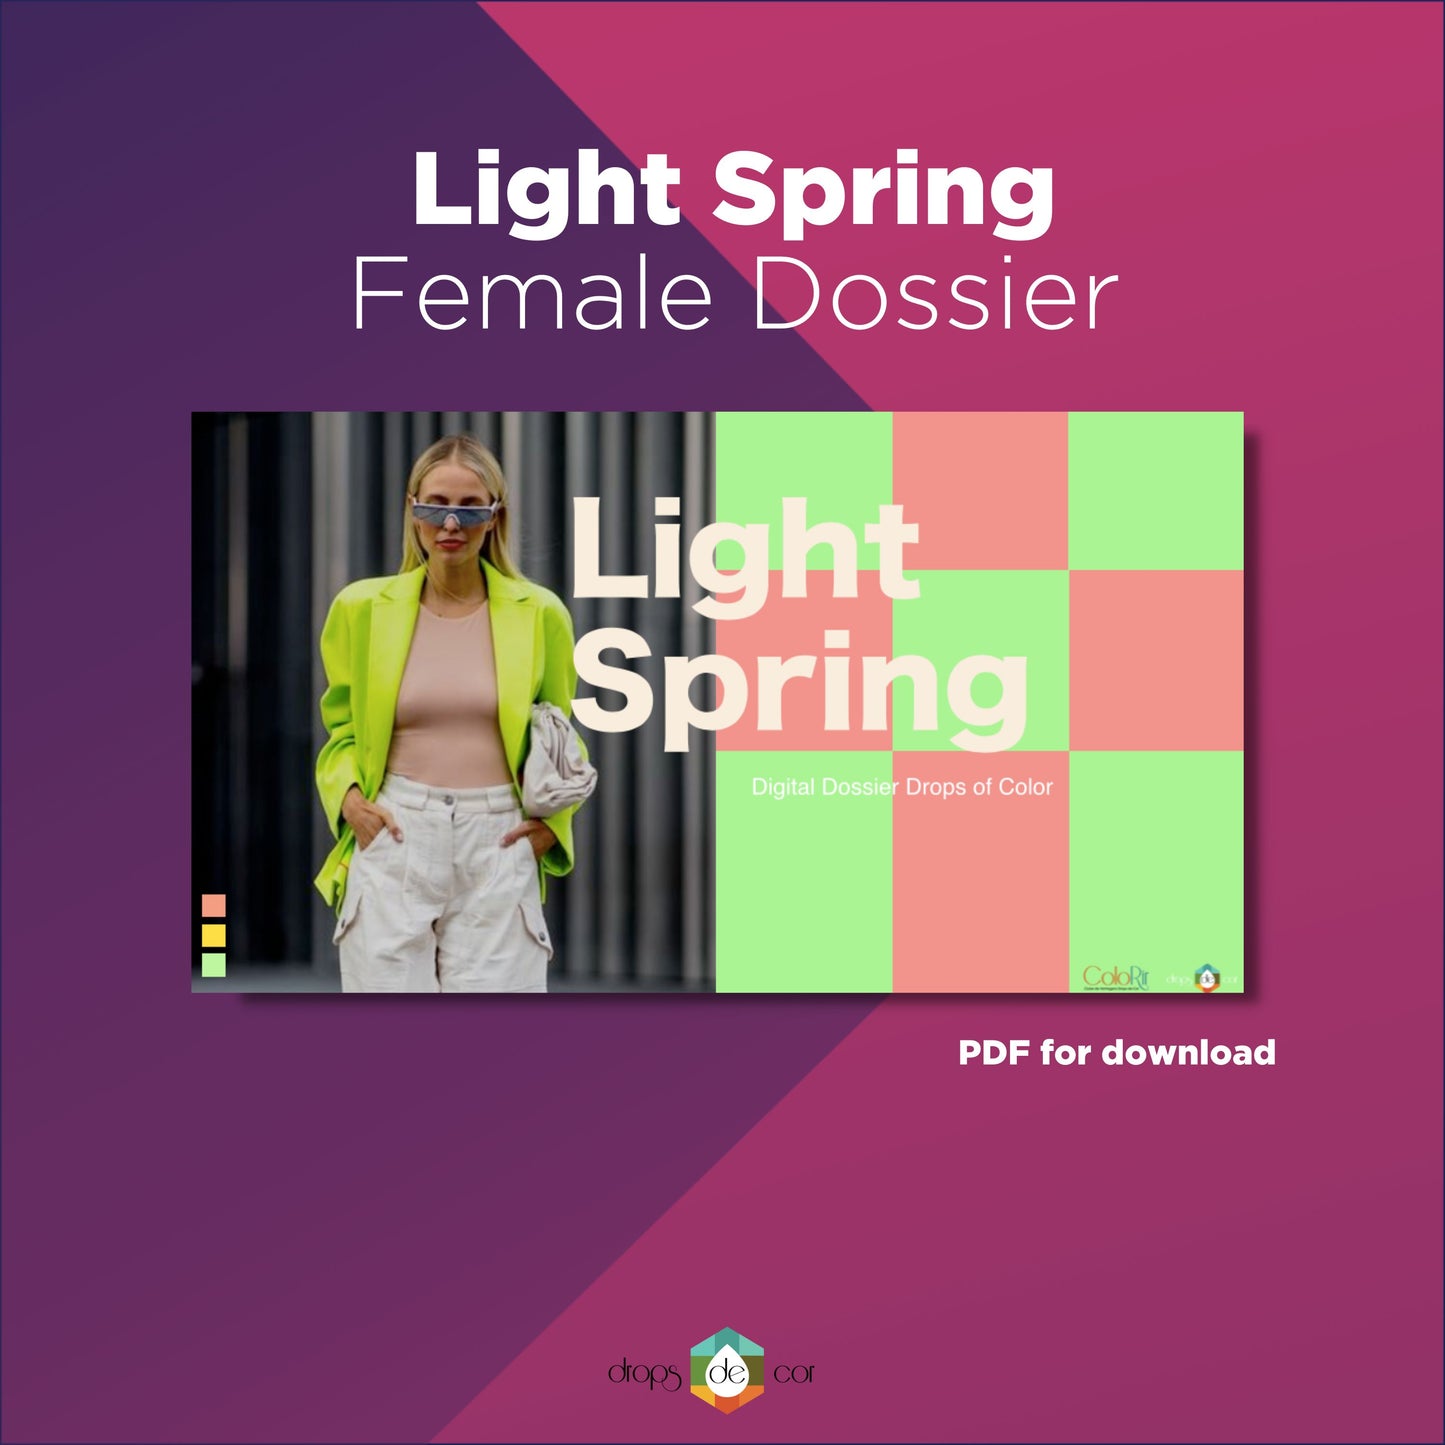 Light Spring Digital Dossier